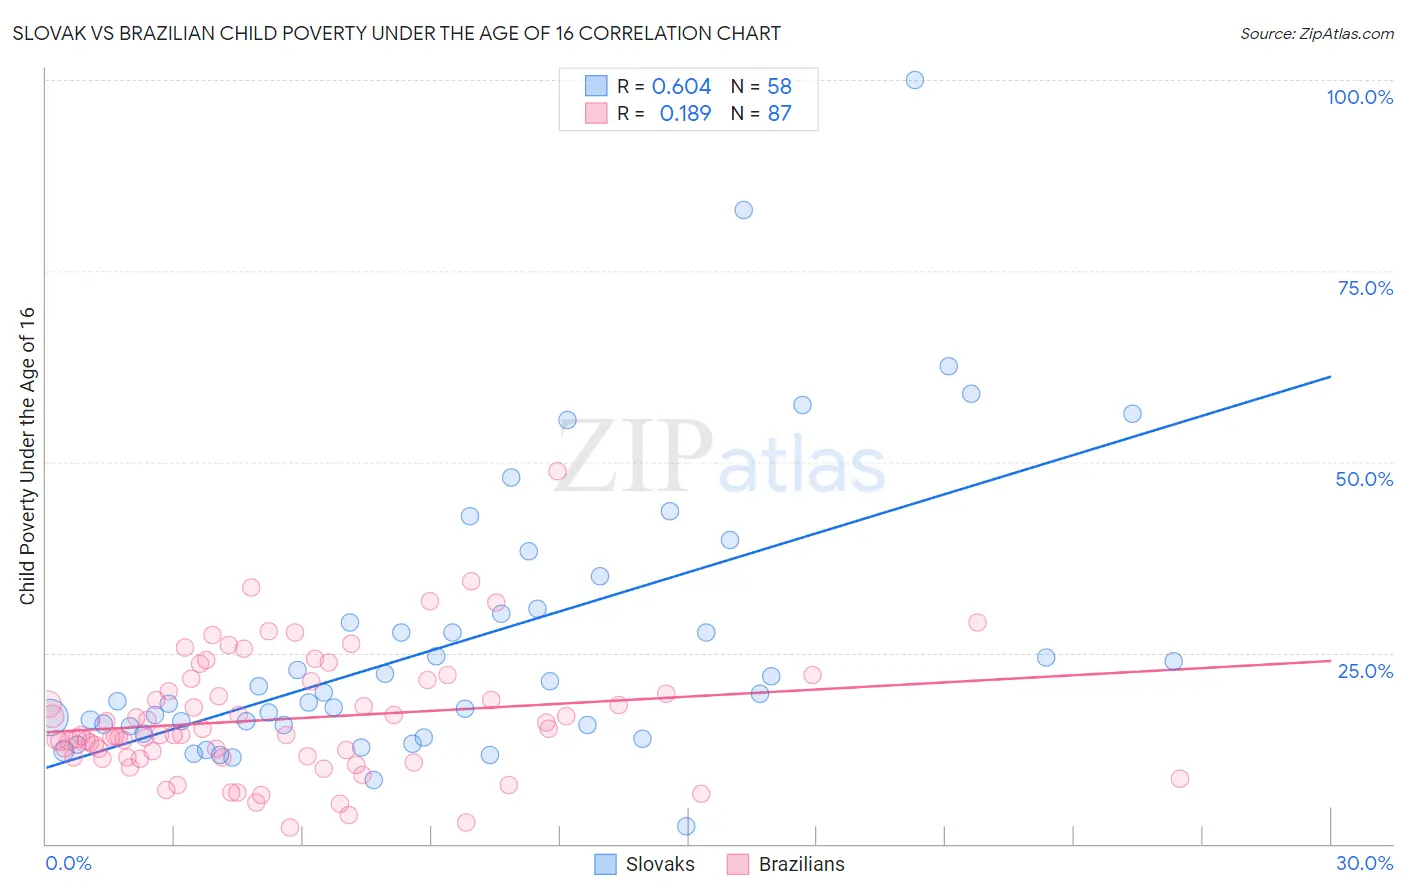 Slovak vs Brazilian Child Poverty Under the Age of 16